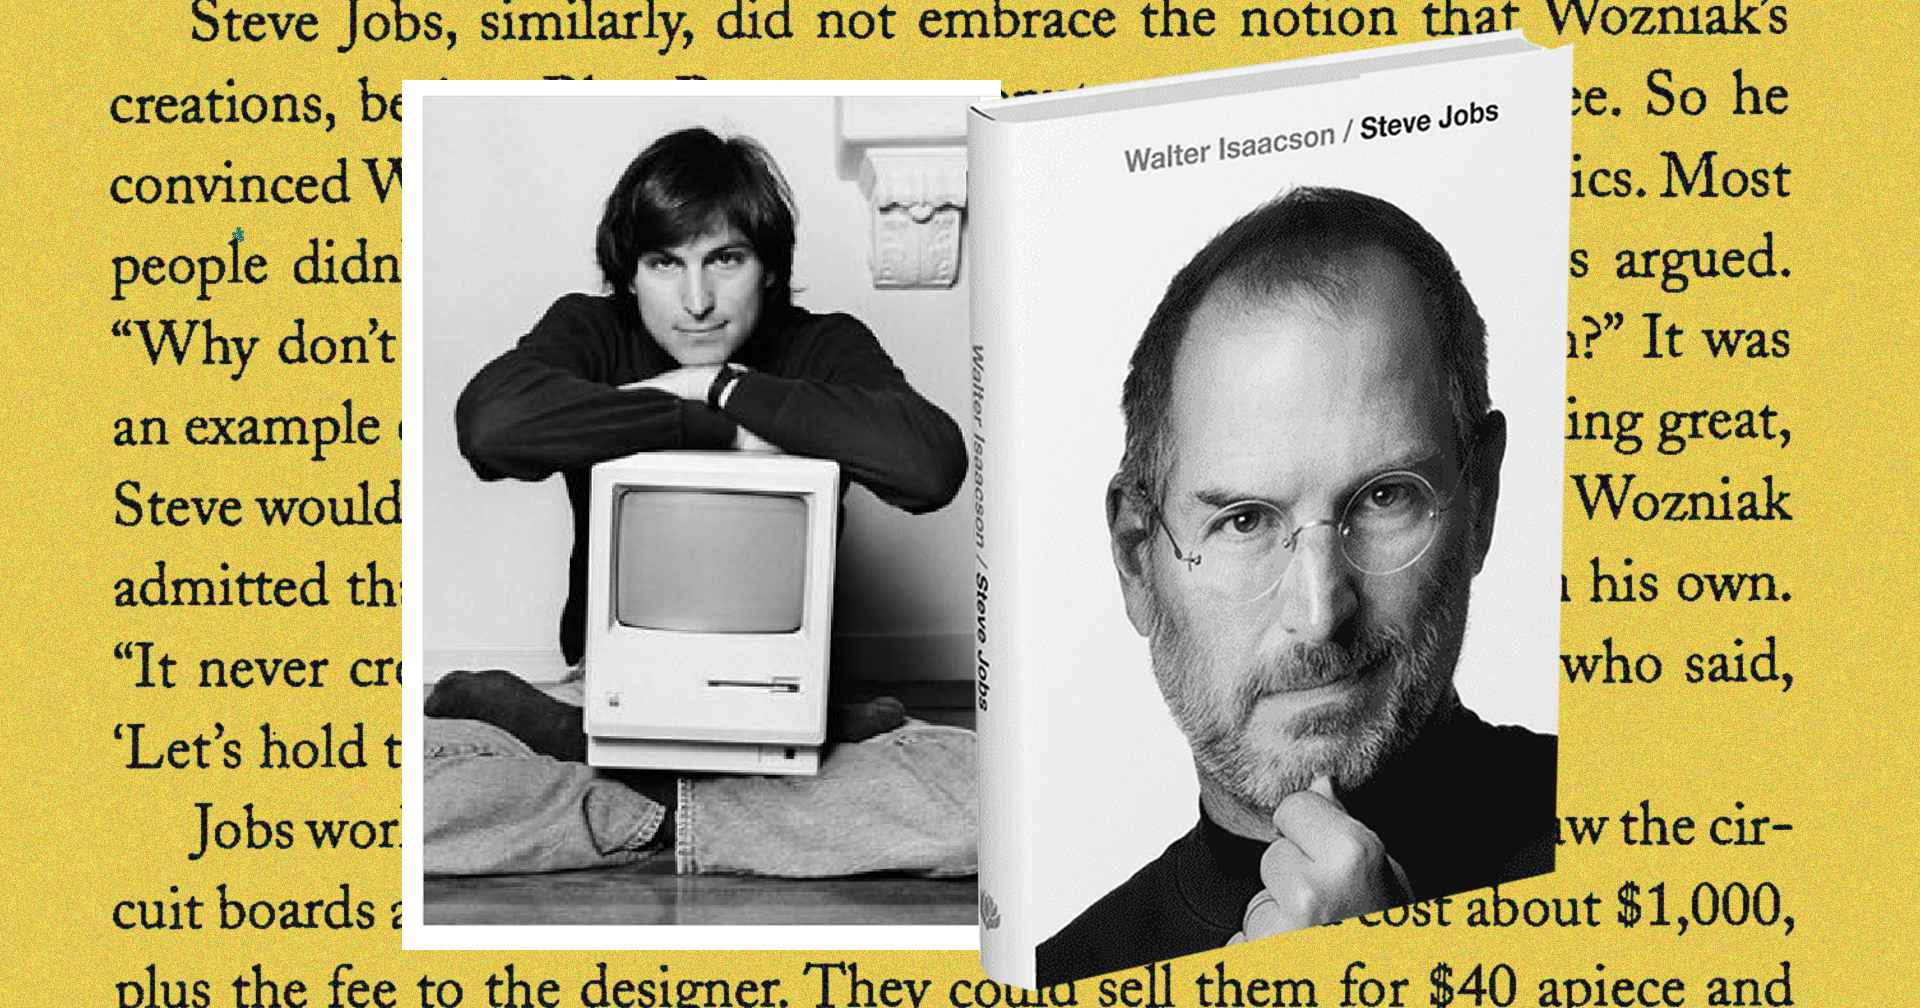 บทเรียนล้ำค่าจากหนังสือชีวประวัติของ Steve Jobs รำลึก 10 ปีที่จากไป